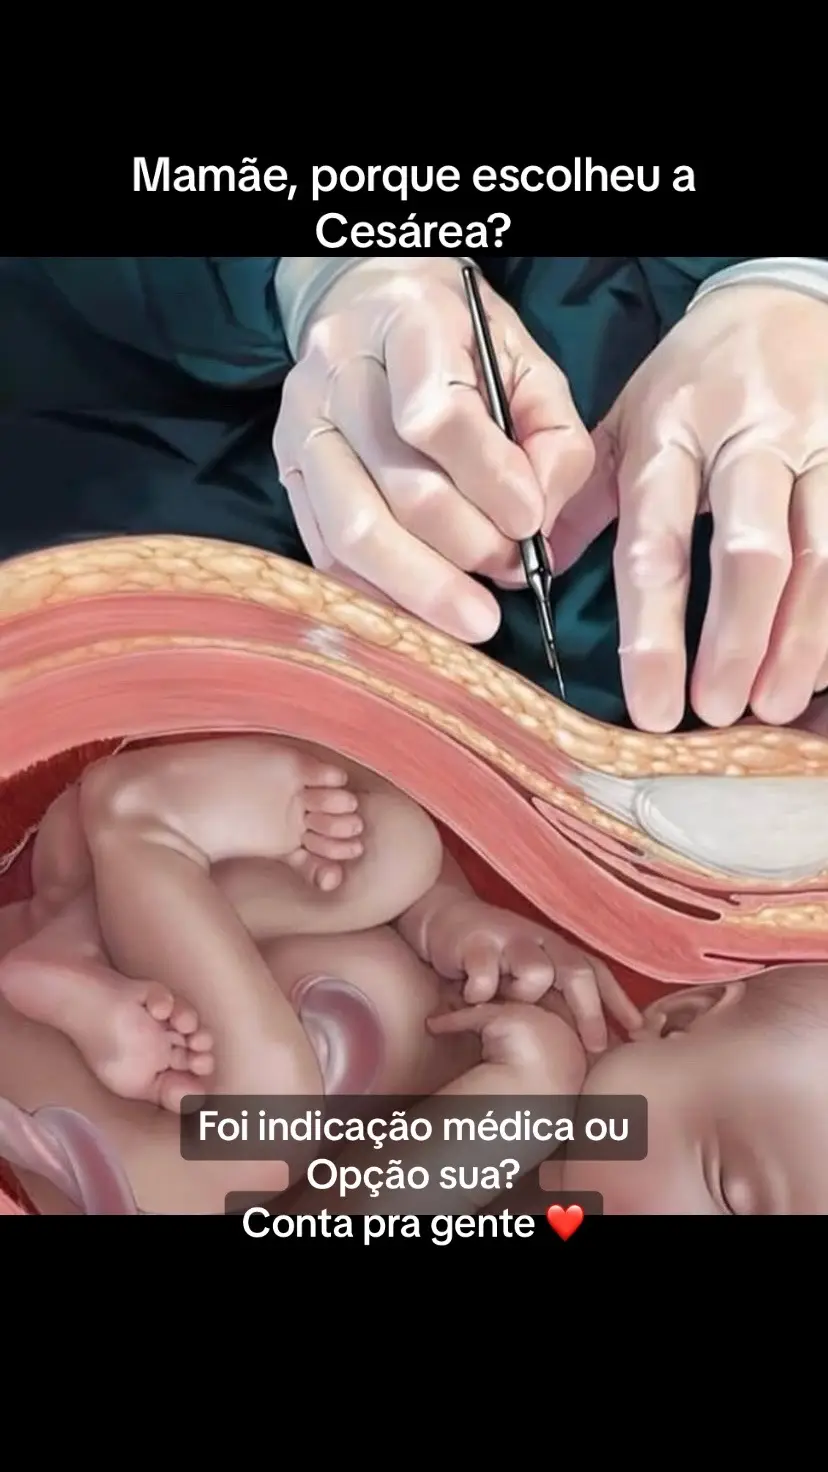 Cesaréa #cesarea #cesariana #gravidez #partocesarea #mamae #viraliza 